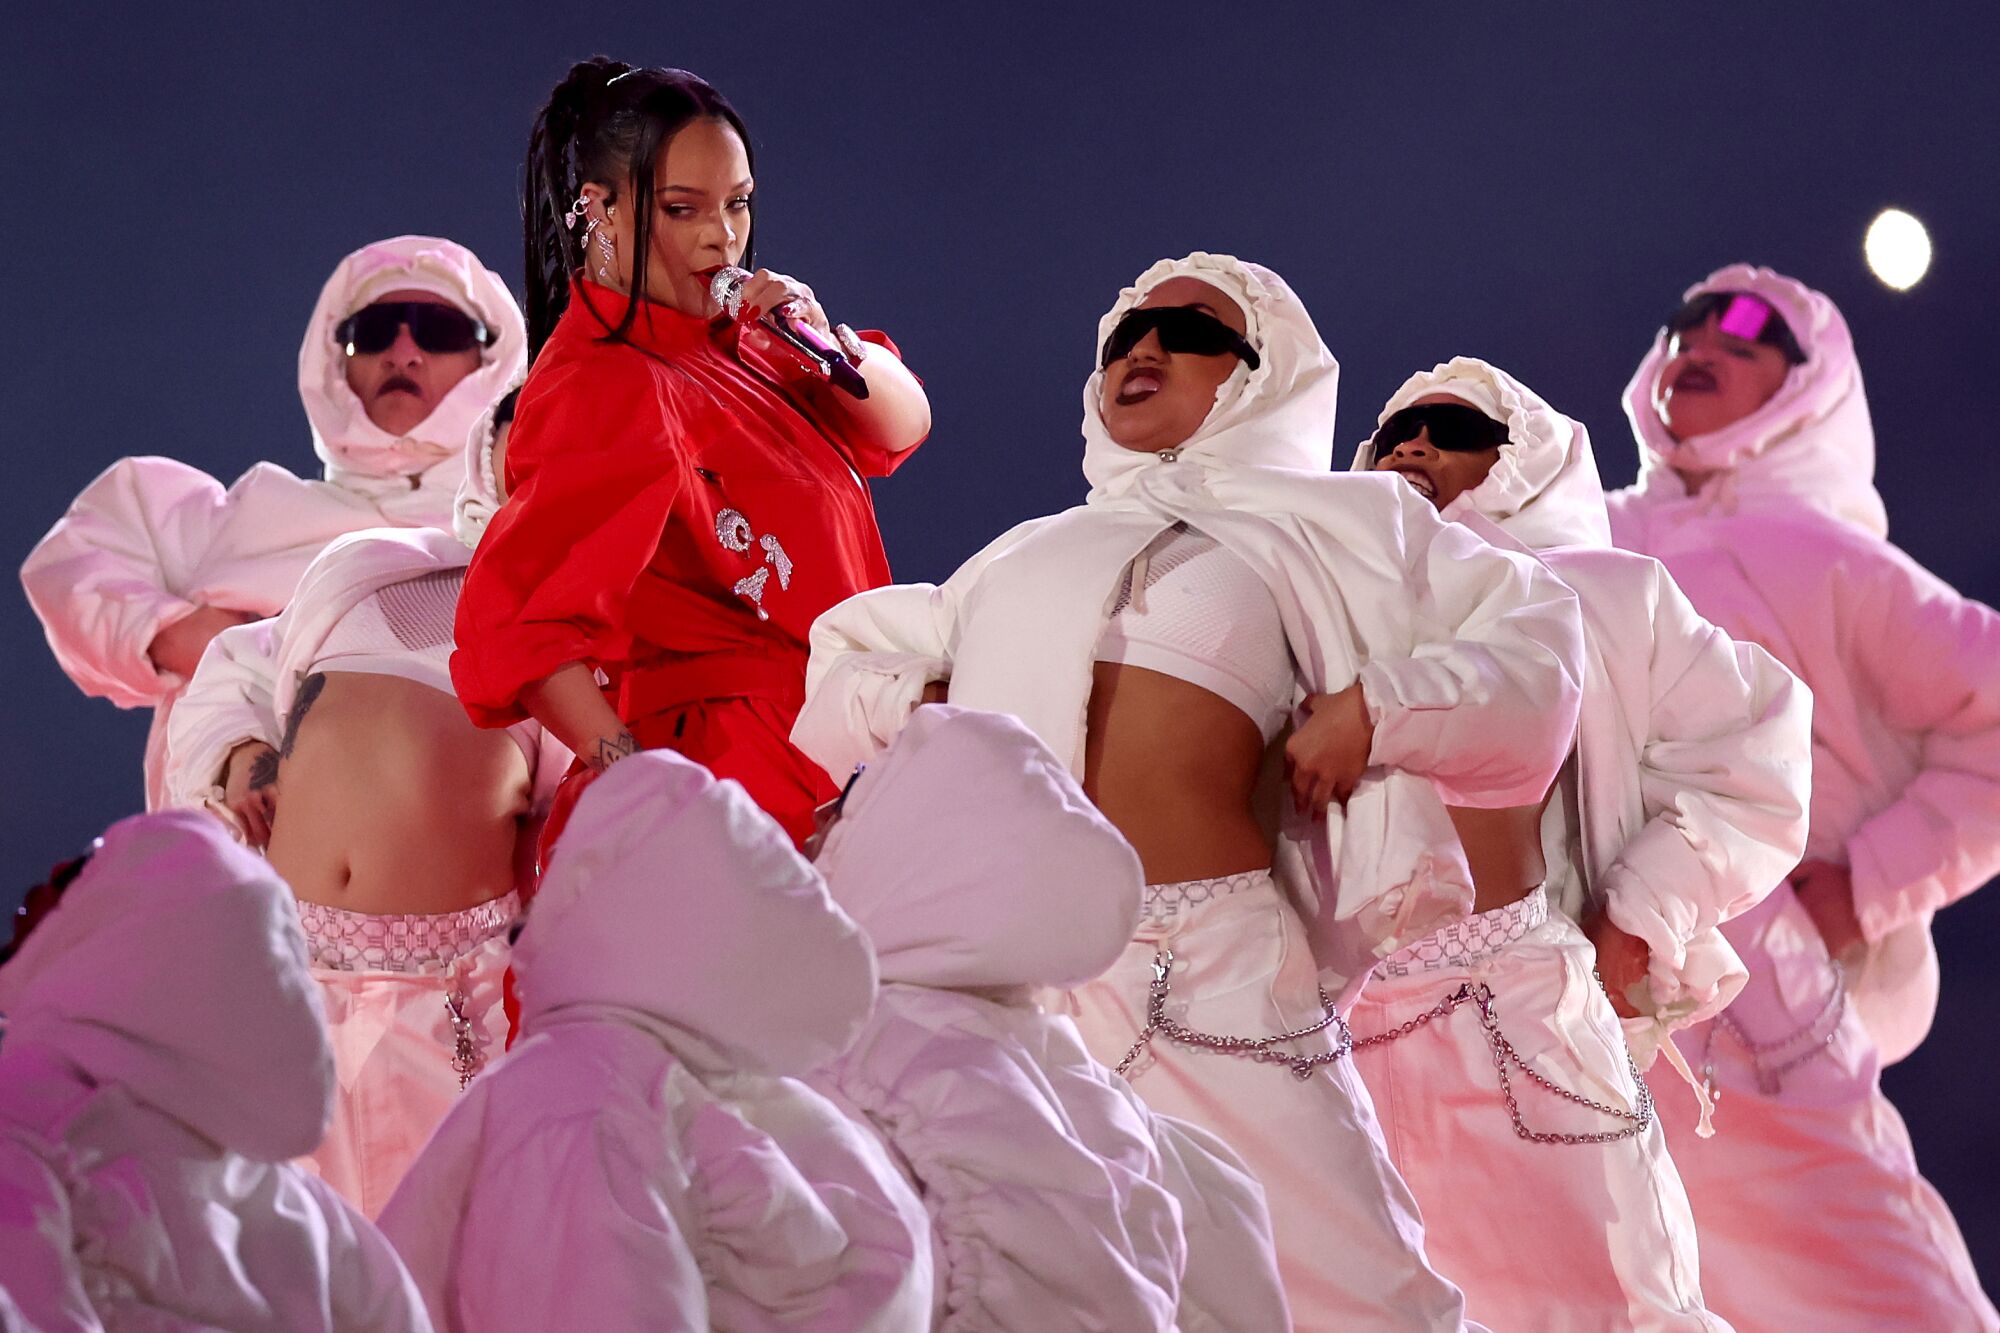 Rangkum Perjalanan Karier, Ini Setlist Rihanna saat Tampil di Super Bowl LVII 